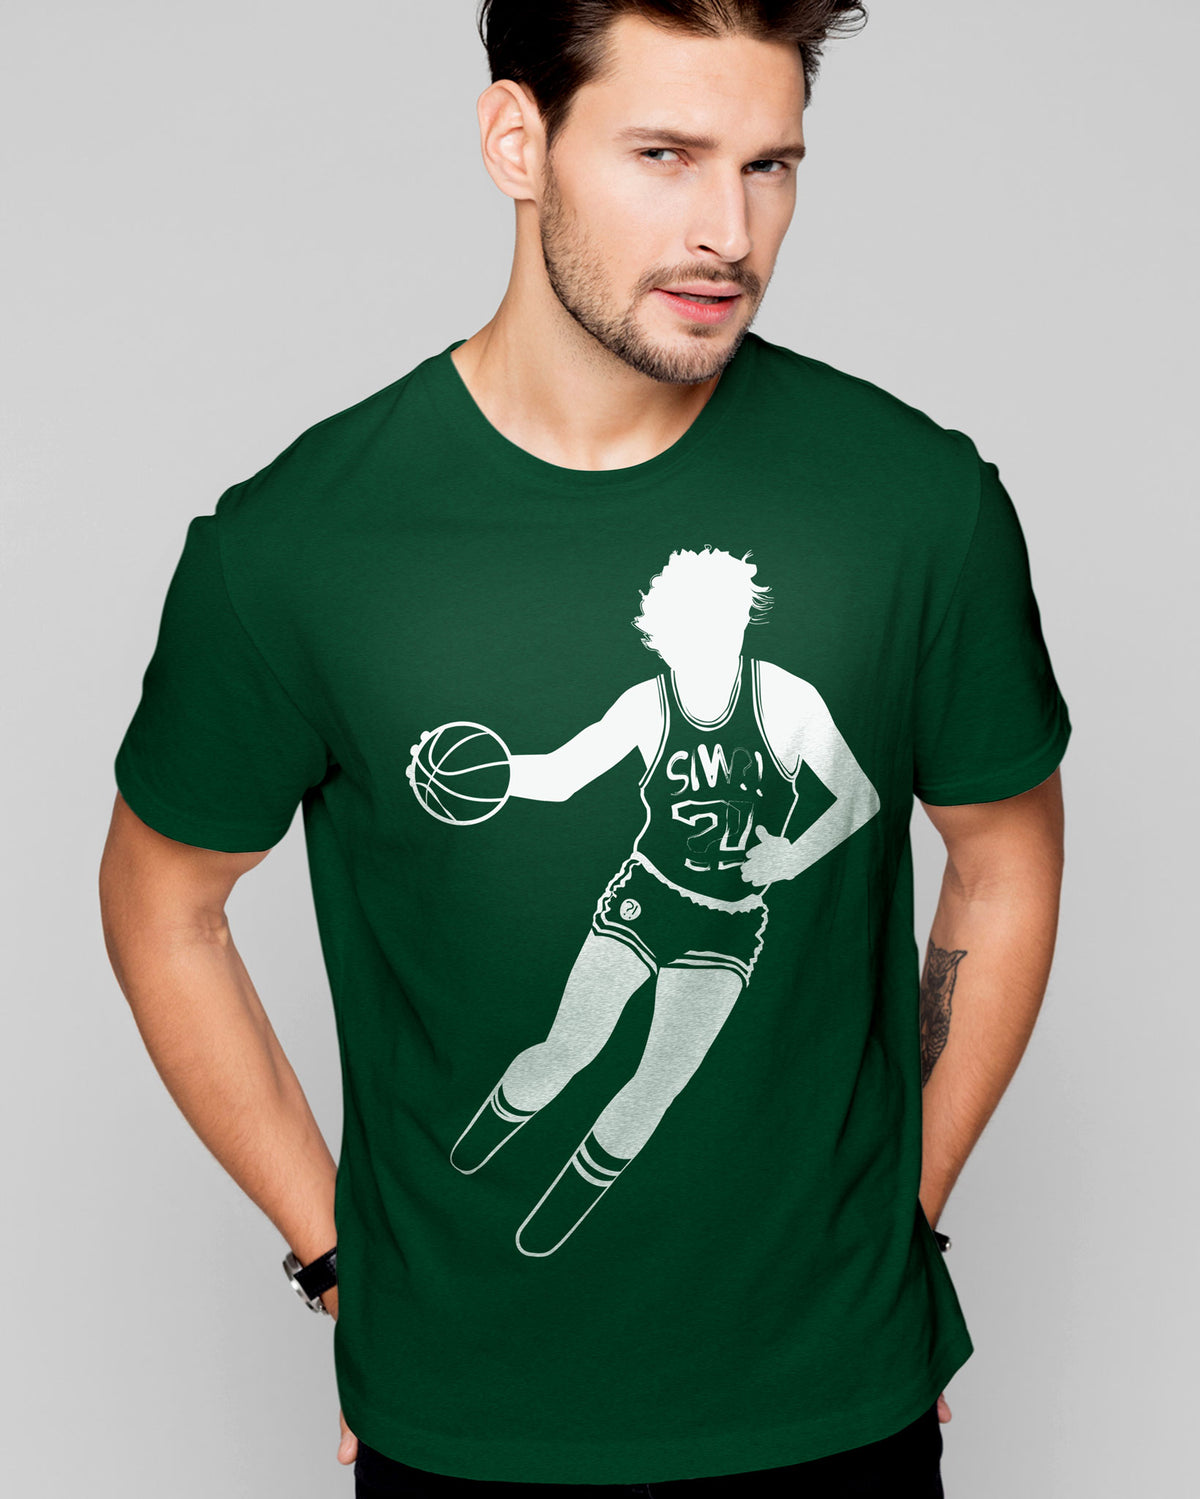 NEST Basketball Stance T-Shirt